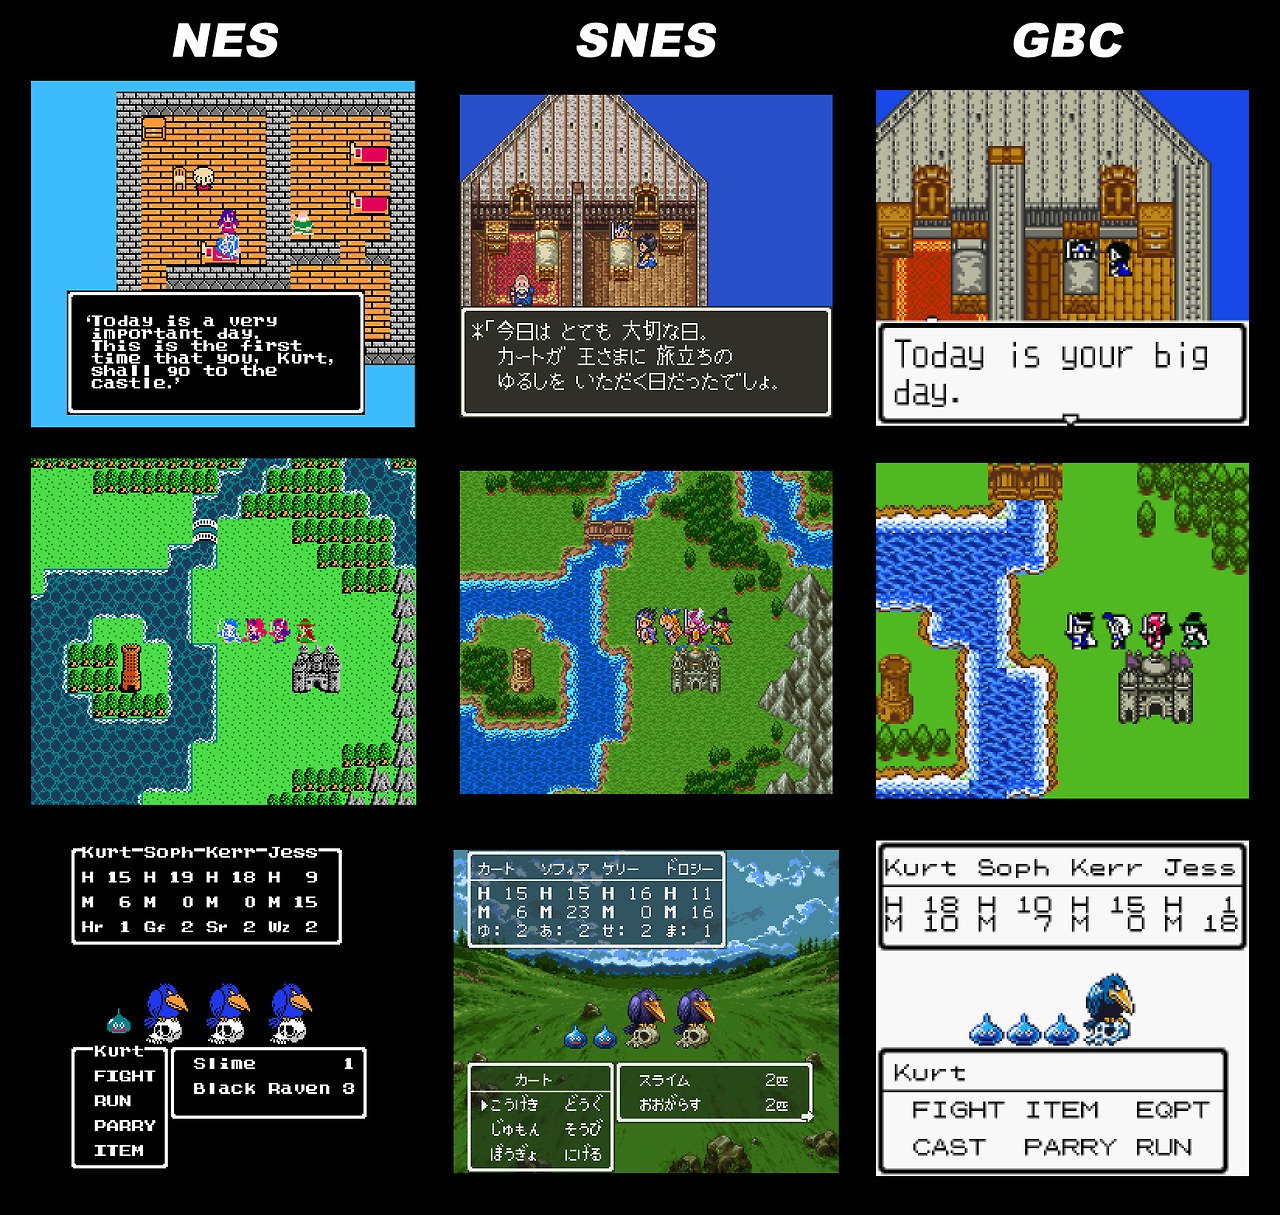 Game Boy / GBC - Dragon Quest 1 & 2 / Dragon Warrior 1 & 2